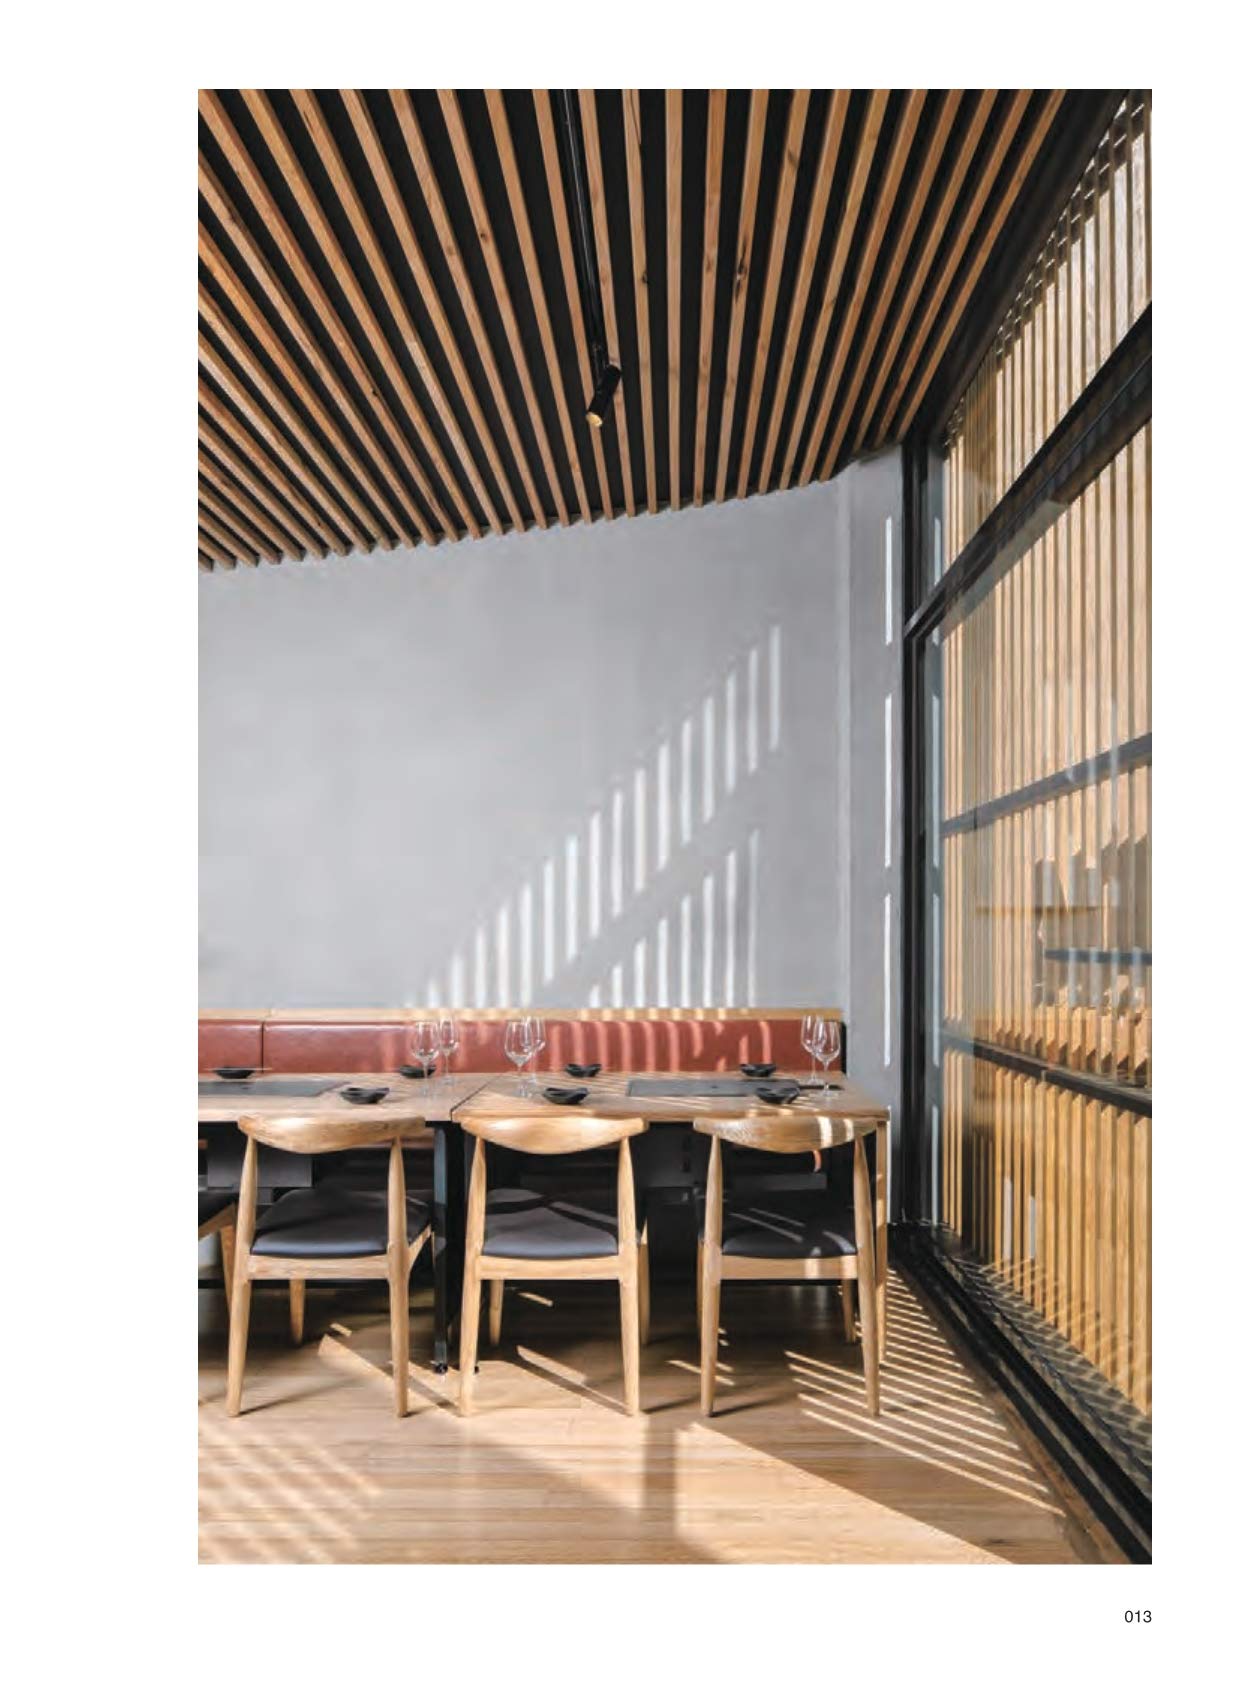 Dinner Time: New Restaurant Interior Design